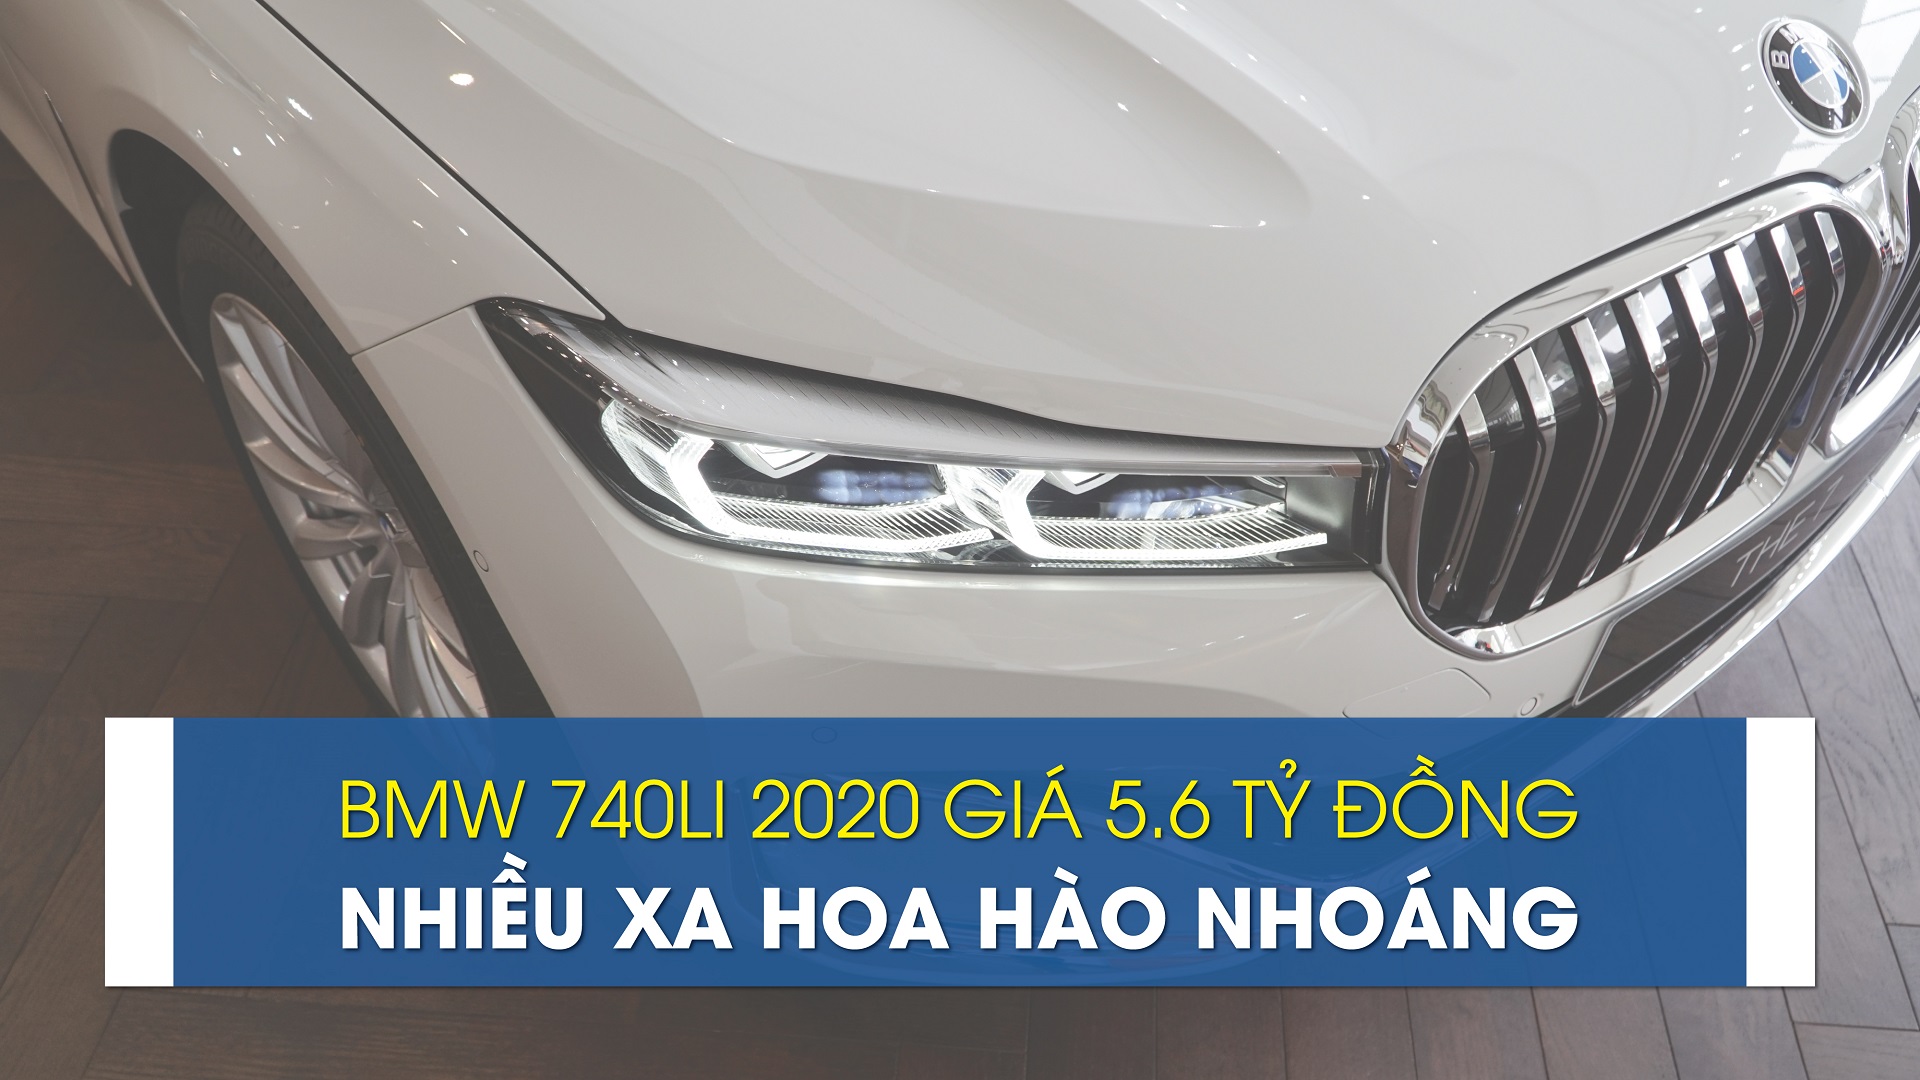 Cận cảnh BMW 740Li 2020, nhiều xa hoa hào nhoáng giá 5.6 tỷ đồng